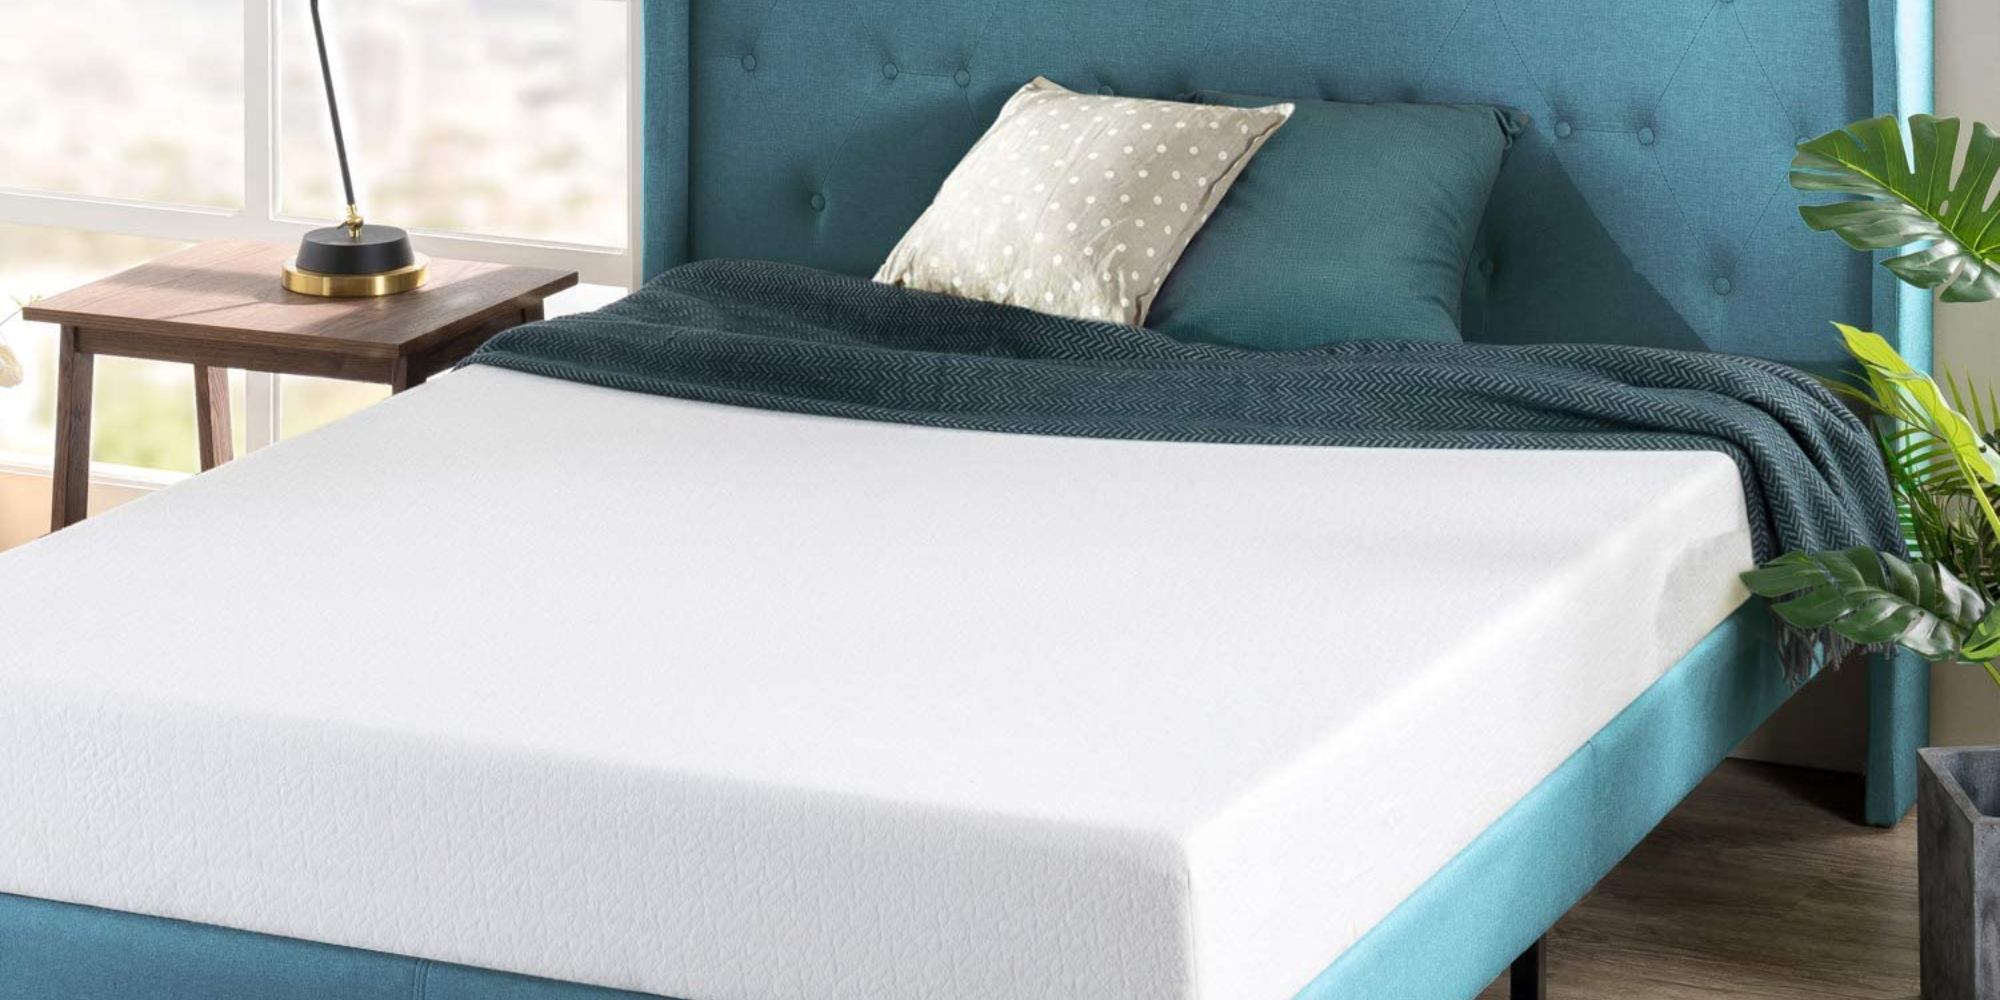 zinus 6 inch mattress reviews